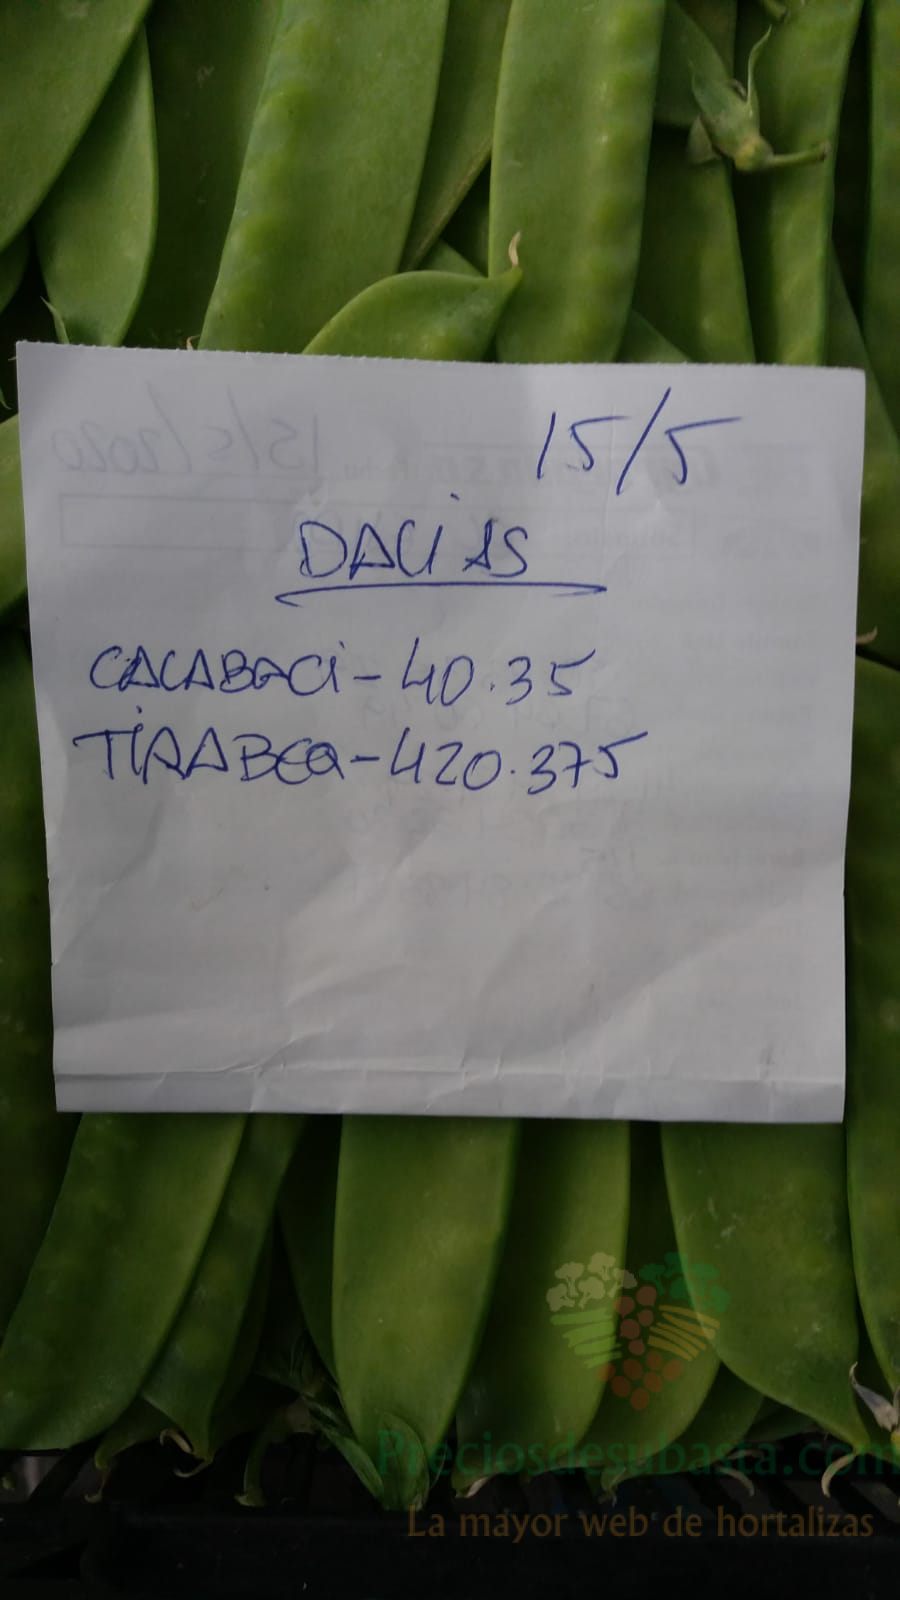 Subasta hortofrutícola AgroEjido Dalias 15 de mayo 2020